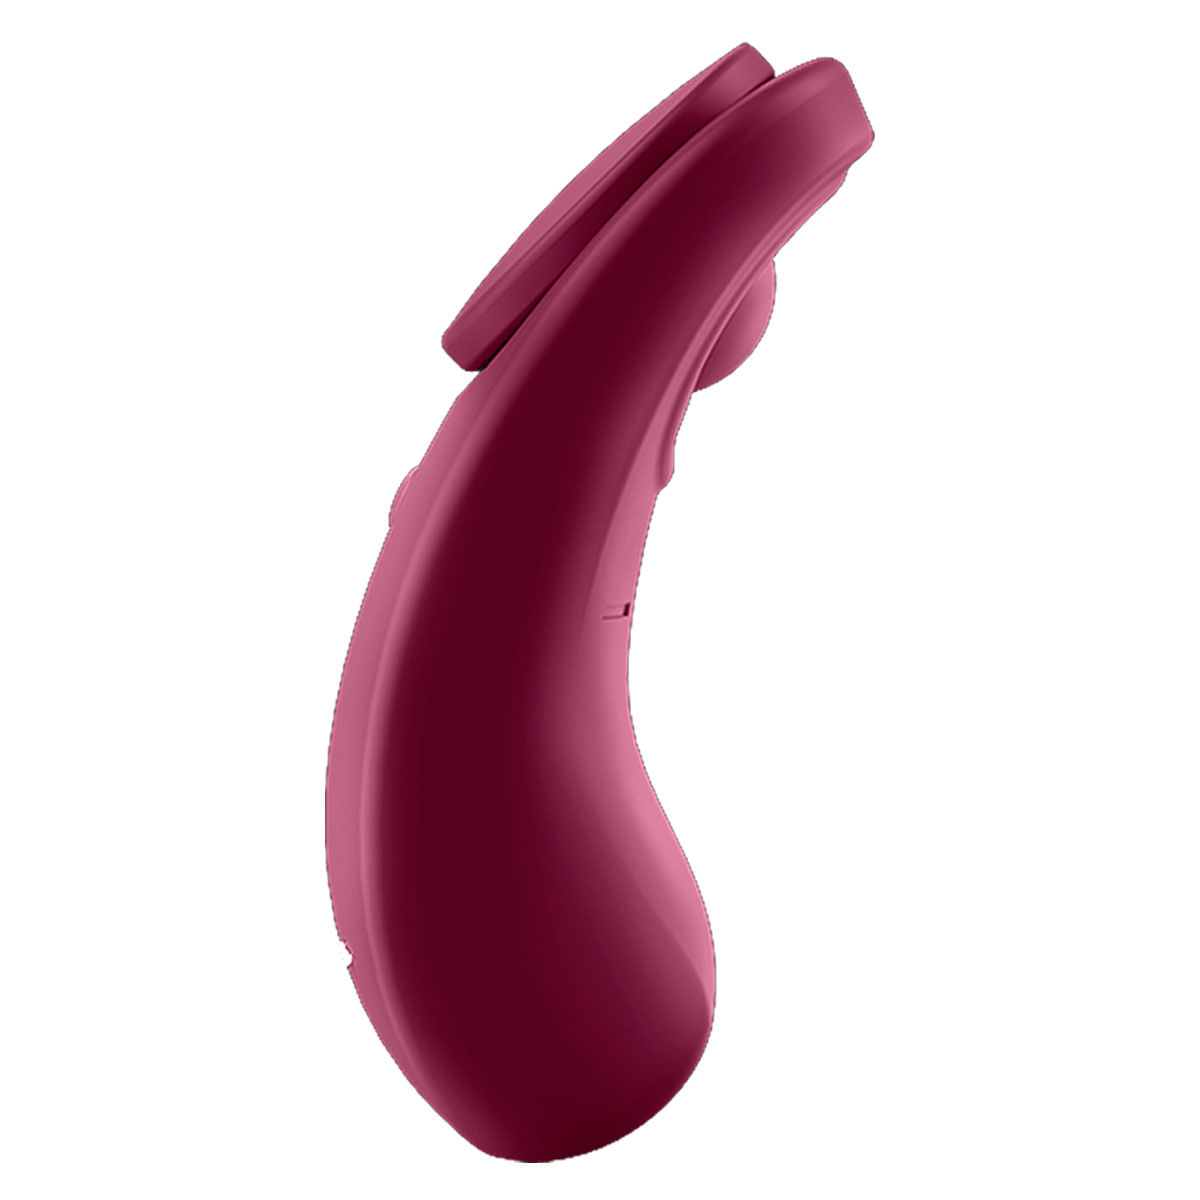 Satisfyer Sexy Secret Panty Vibrador para Calcinha Estimulador Clitoriano